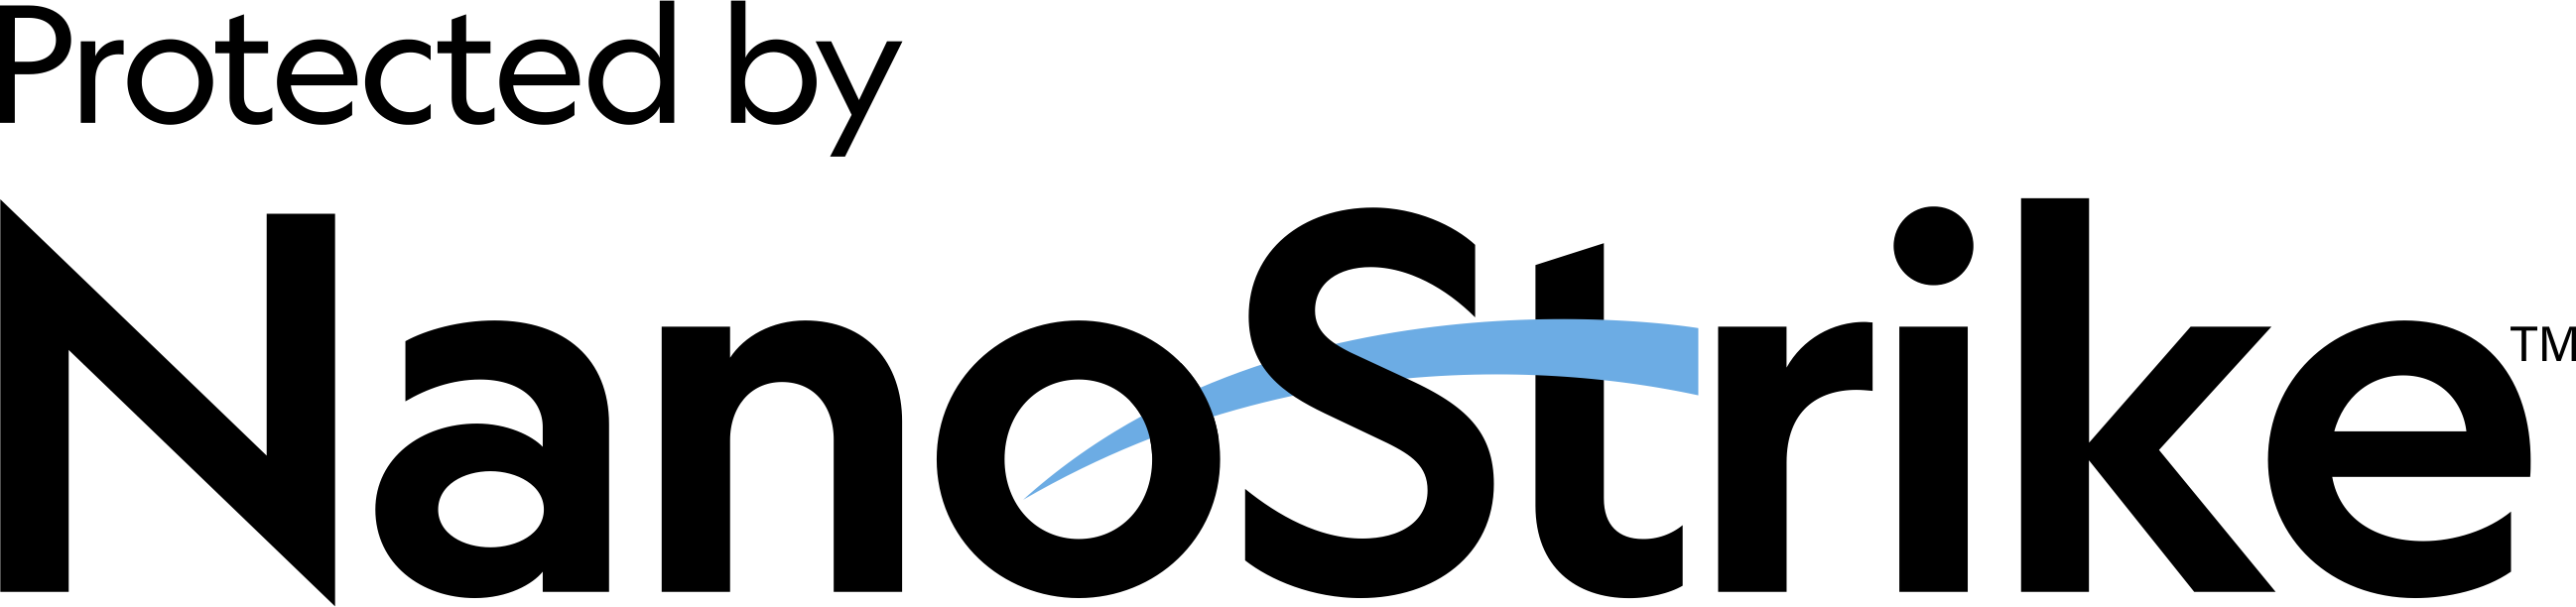 NanoStrike logo